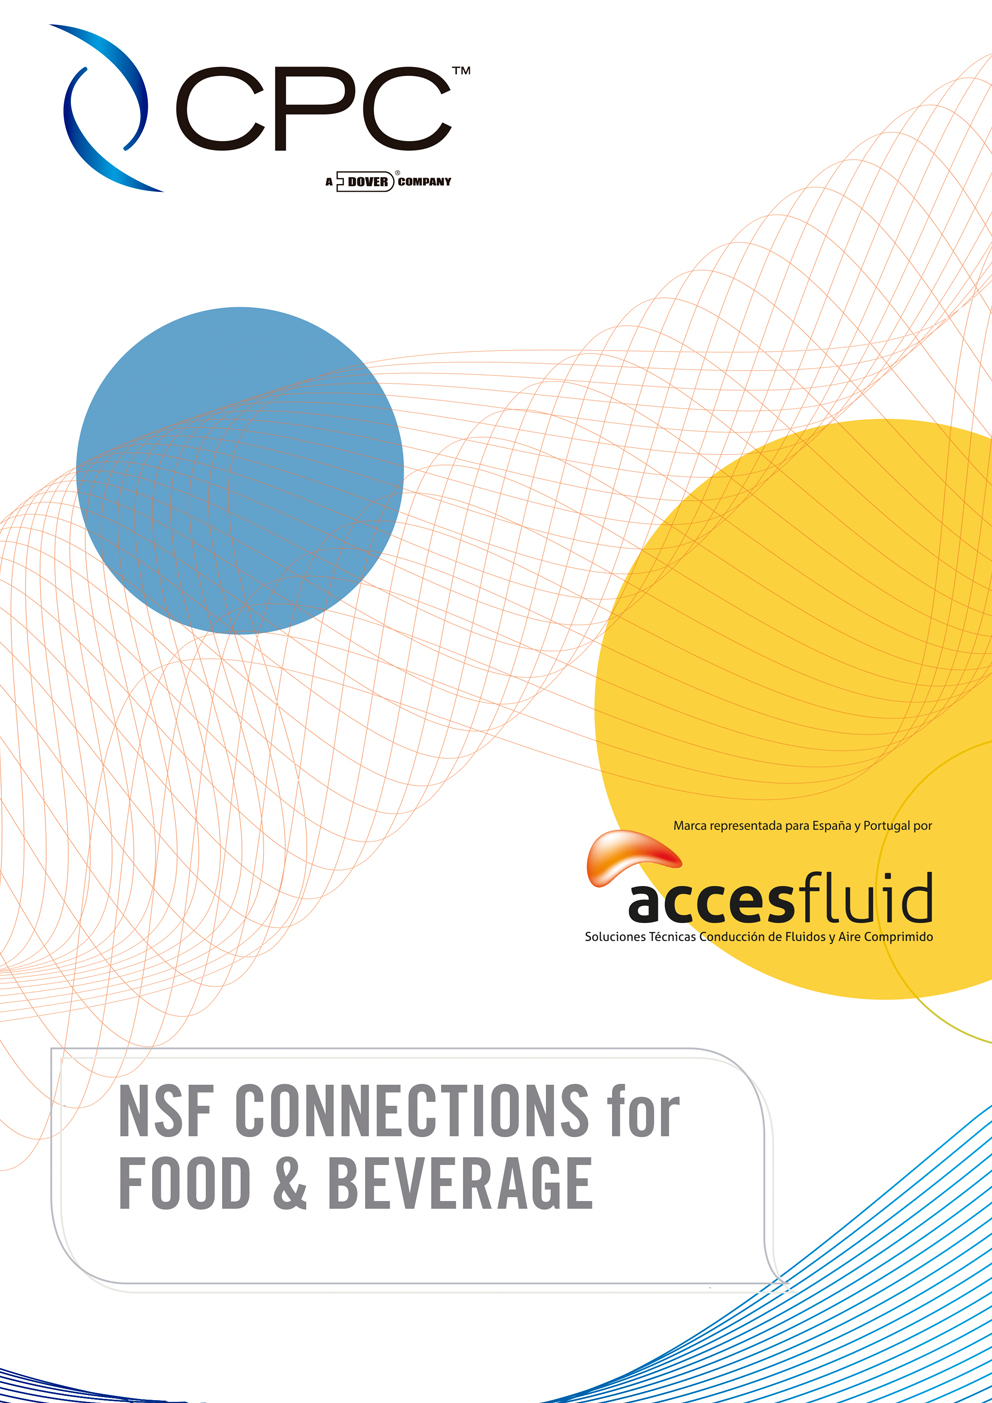 Catálogo Conectores linea alimentación NSF - CPC COLDER